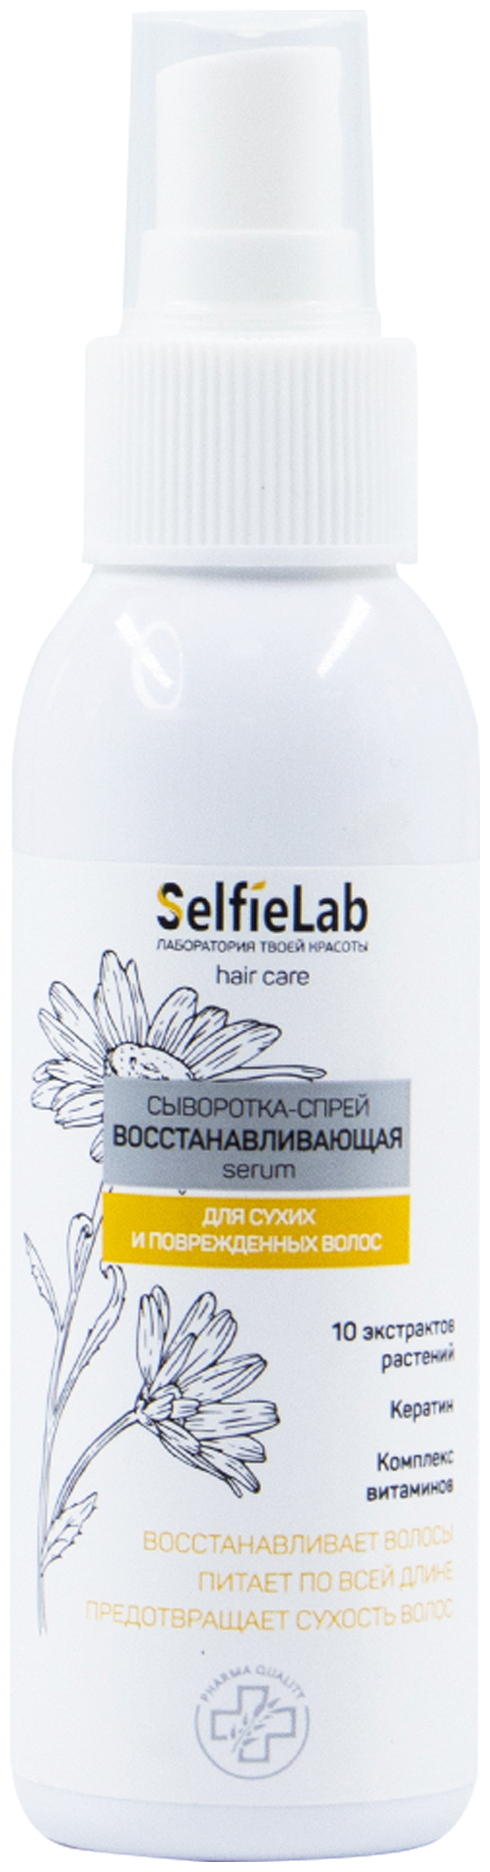 SelfieLab Сыворотка-спрей для волос восстанавливающая